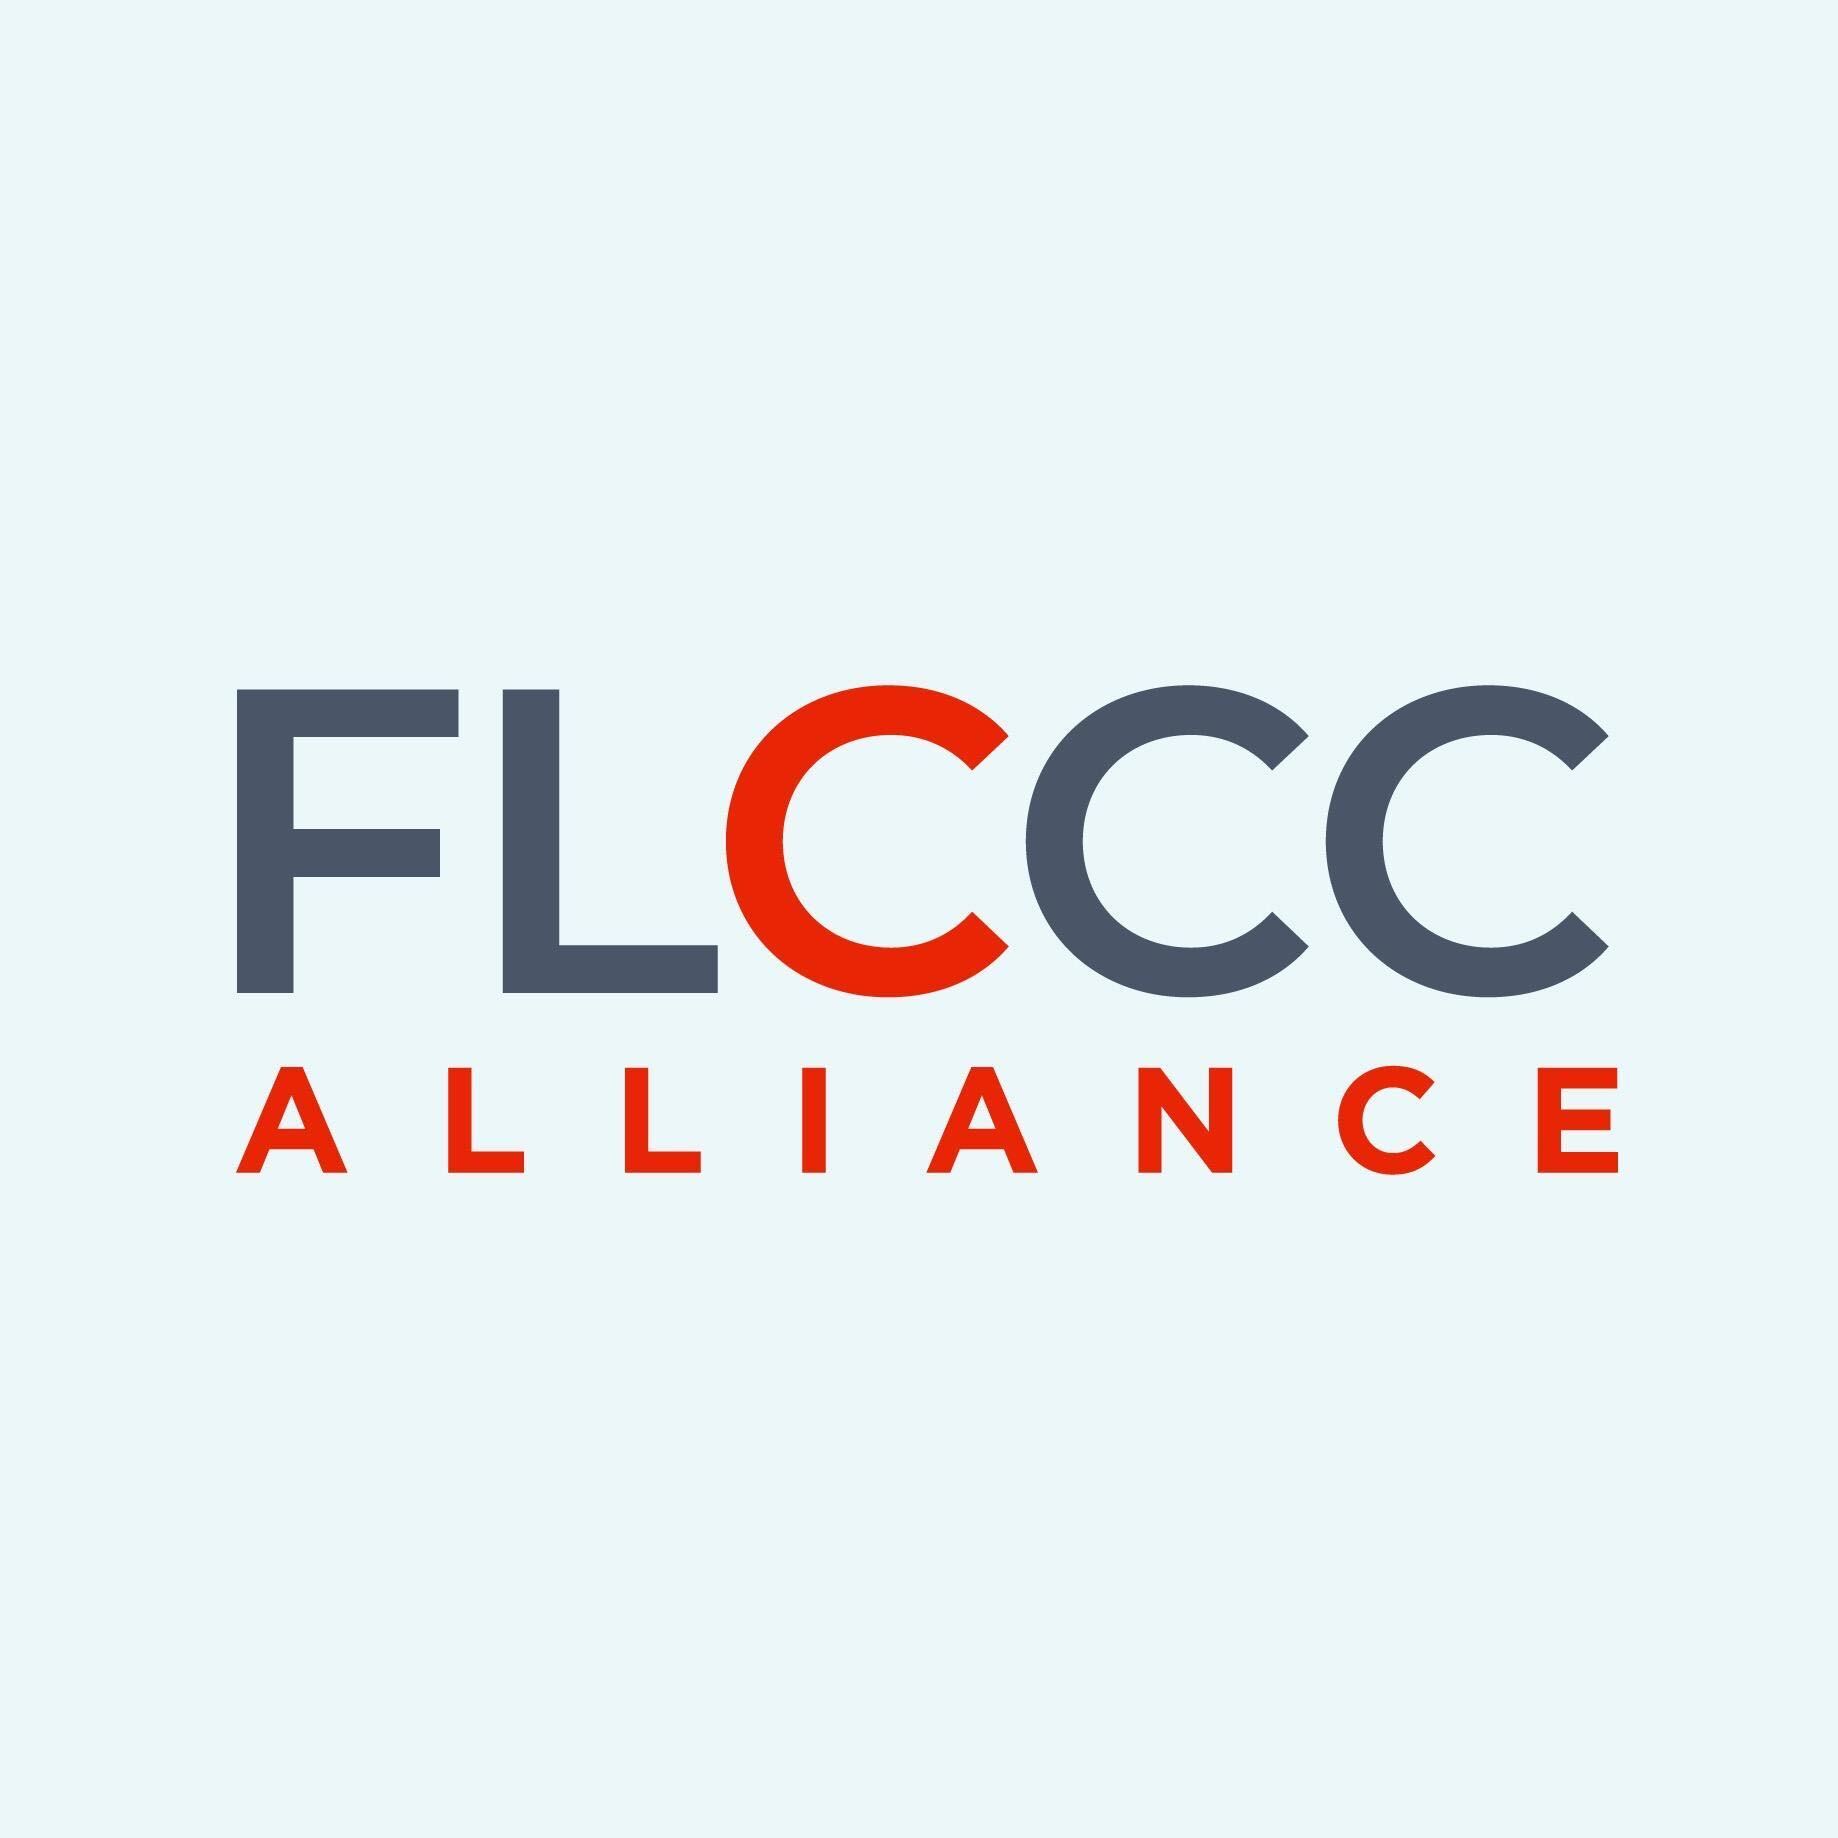 Alianza FLCCC